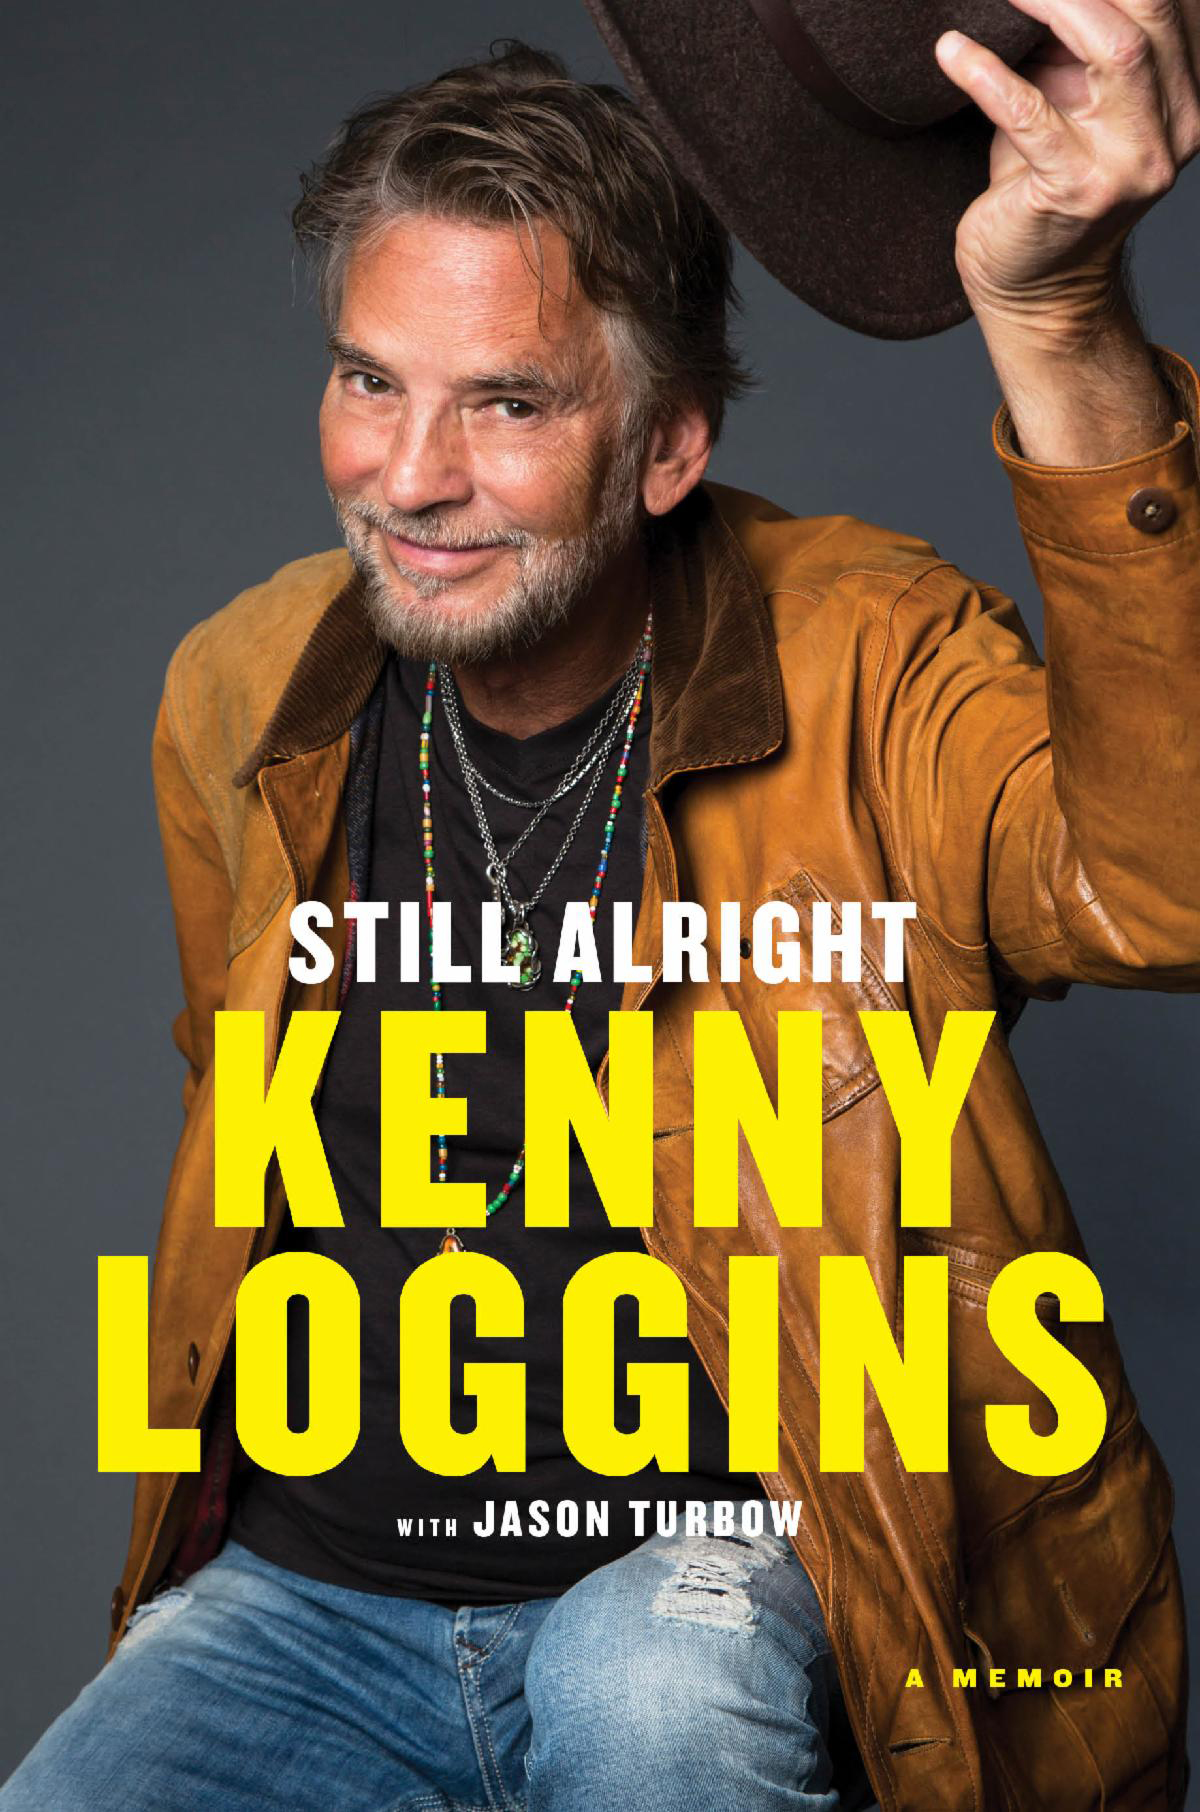 Kenny Loggins - 'Still Alright' autobiography